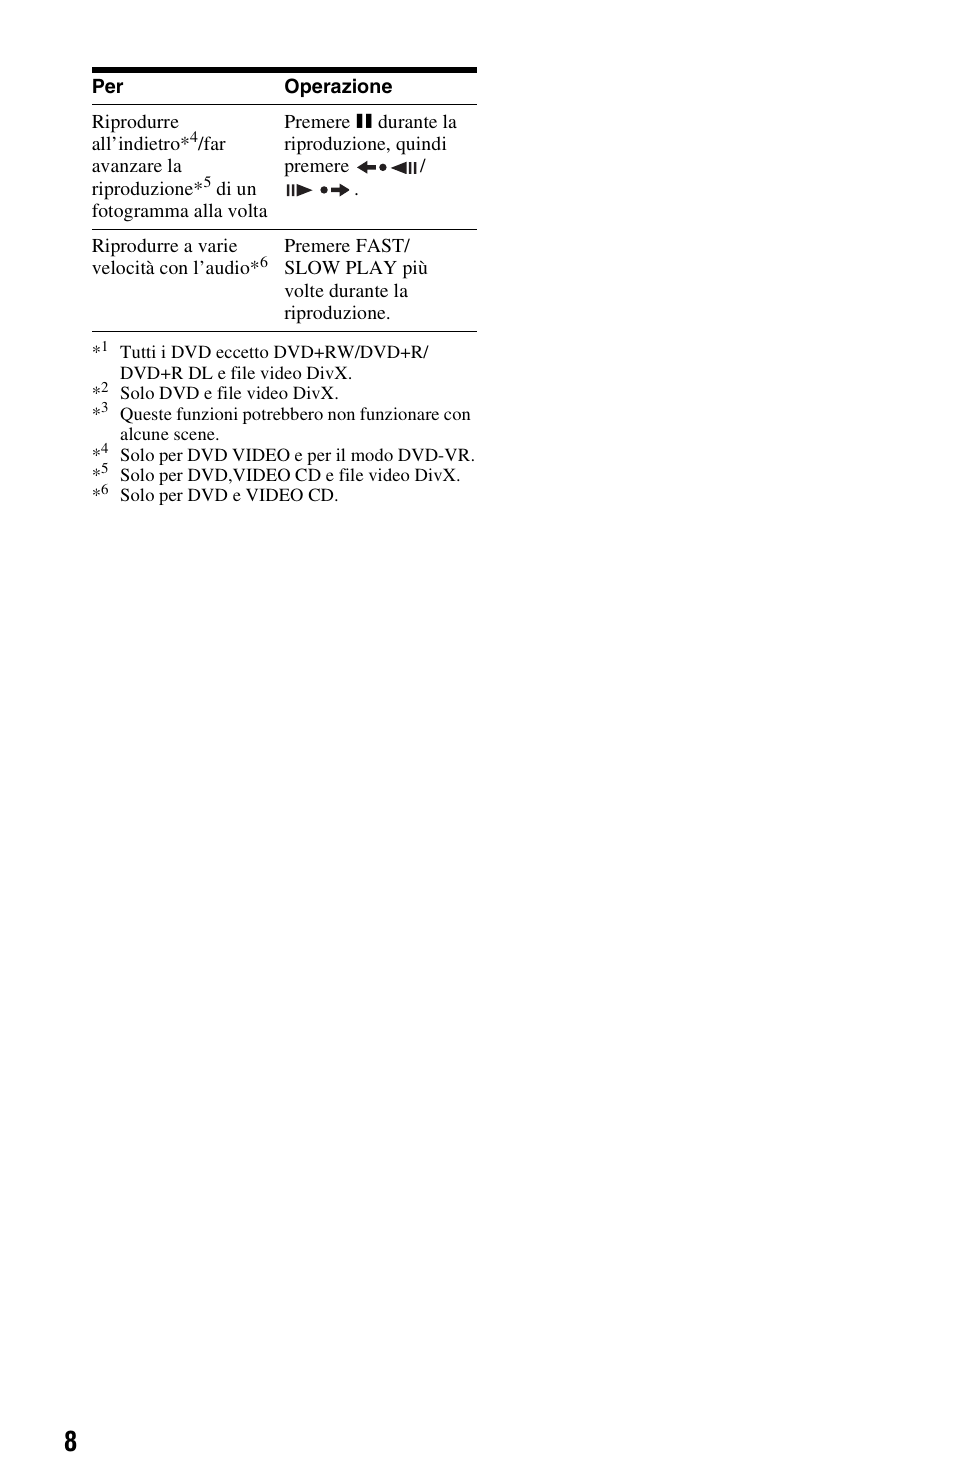 Sony DVP-SR100 Manuale d'uso | Pagina 8 / 48